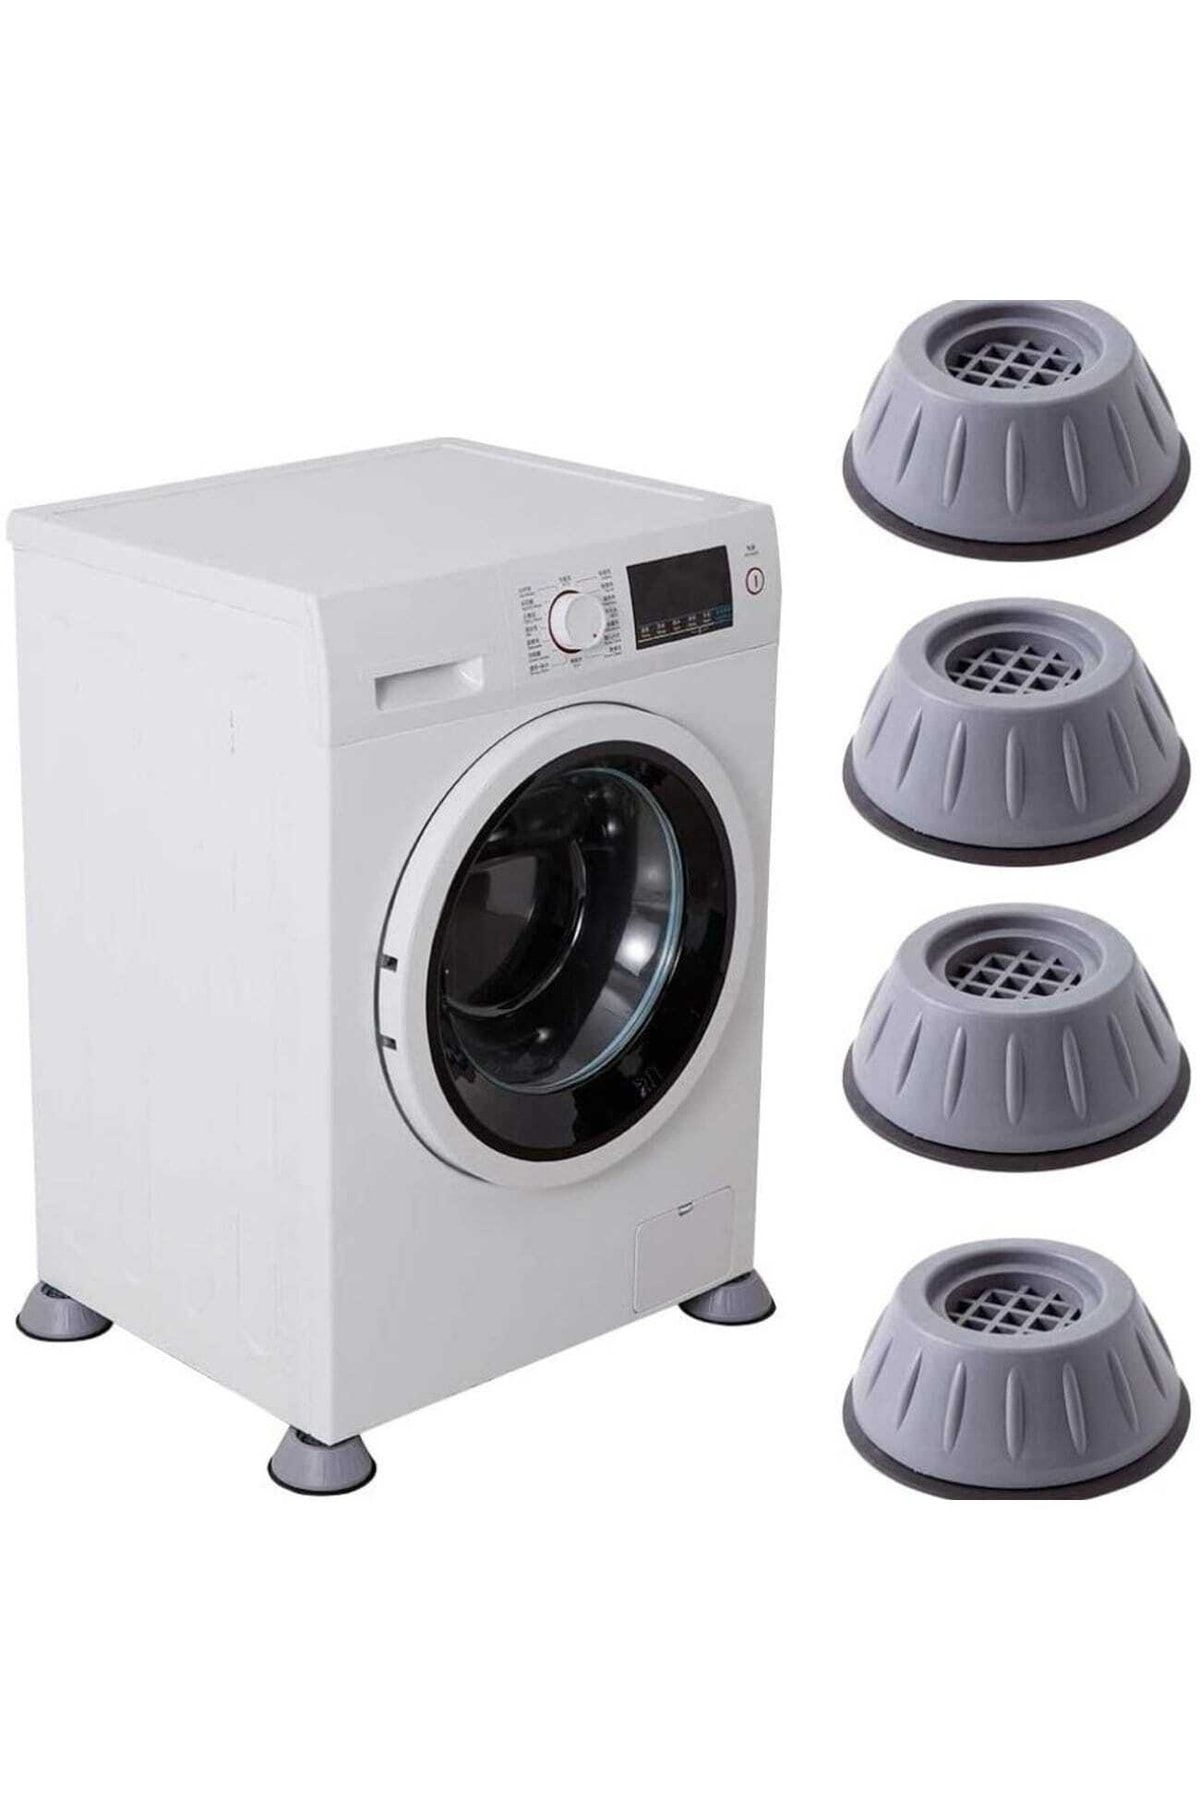 Arçelik Çamaşır Makinesi Buzdolabı Titreşim Ve Ses Önleyici Vantuzlu Ayak Takoz Kaliteli Ürün 12 Adet 3 Takm